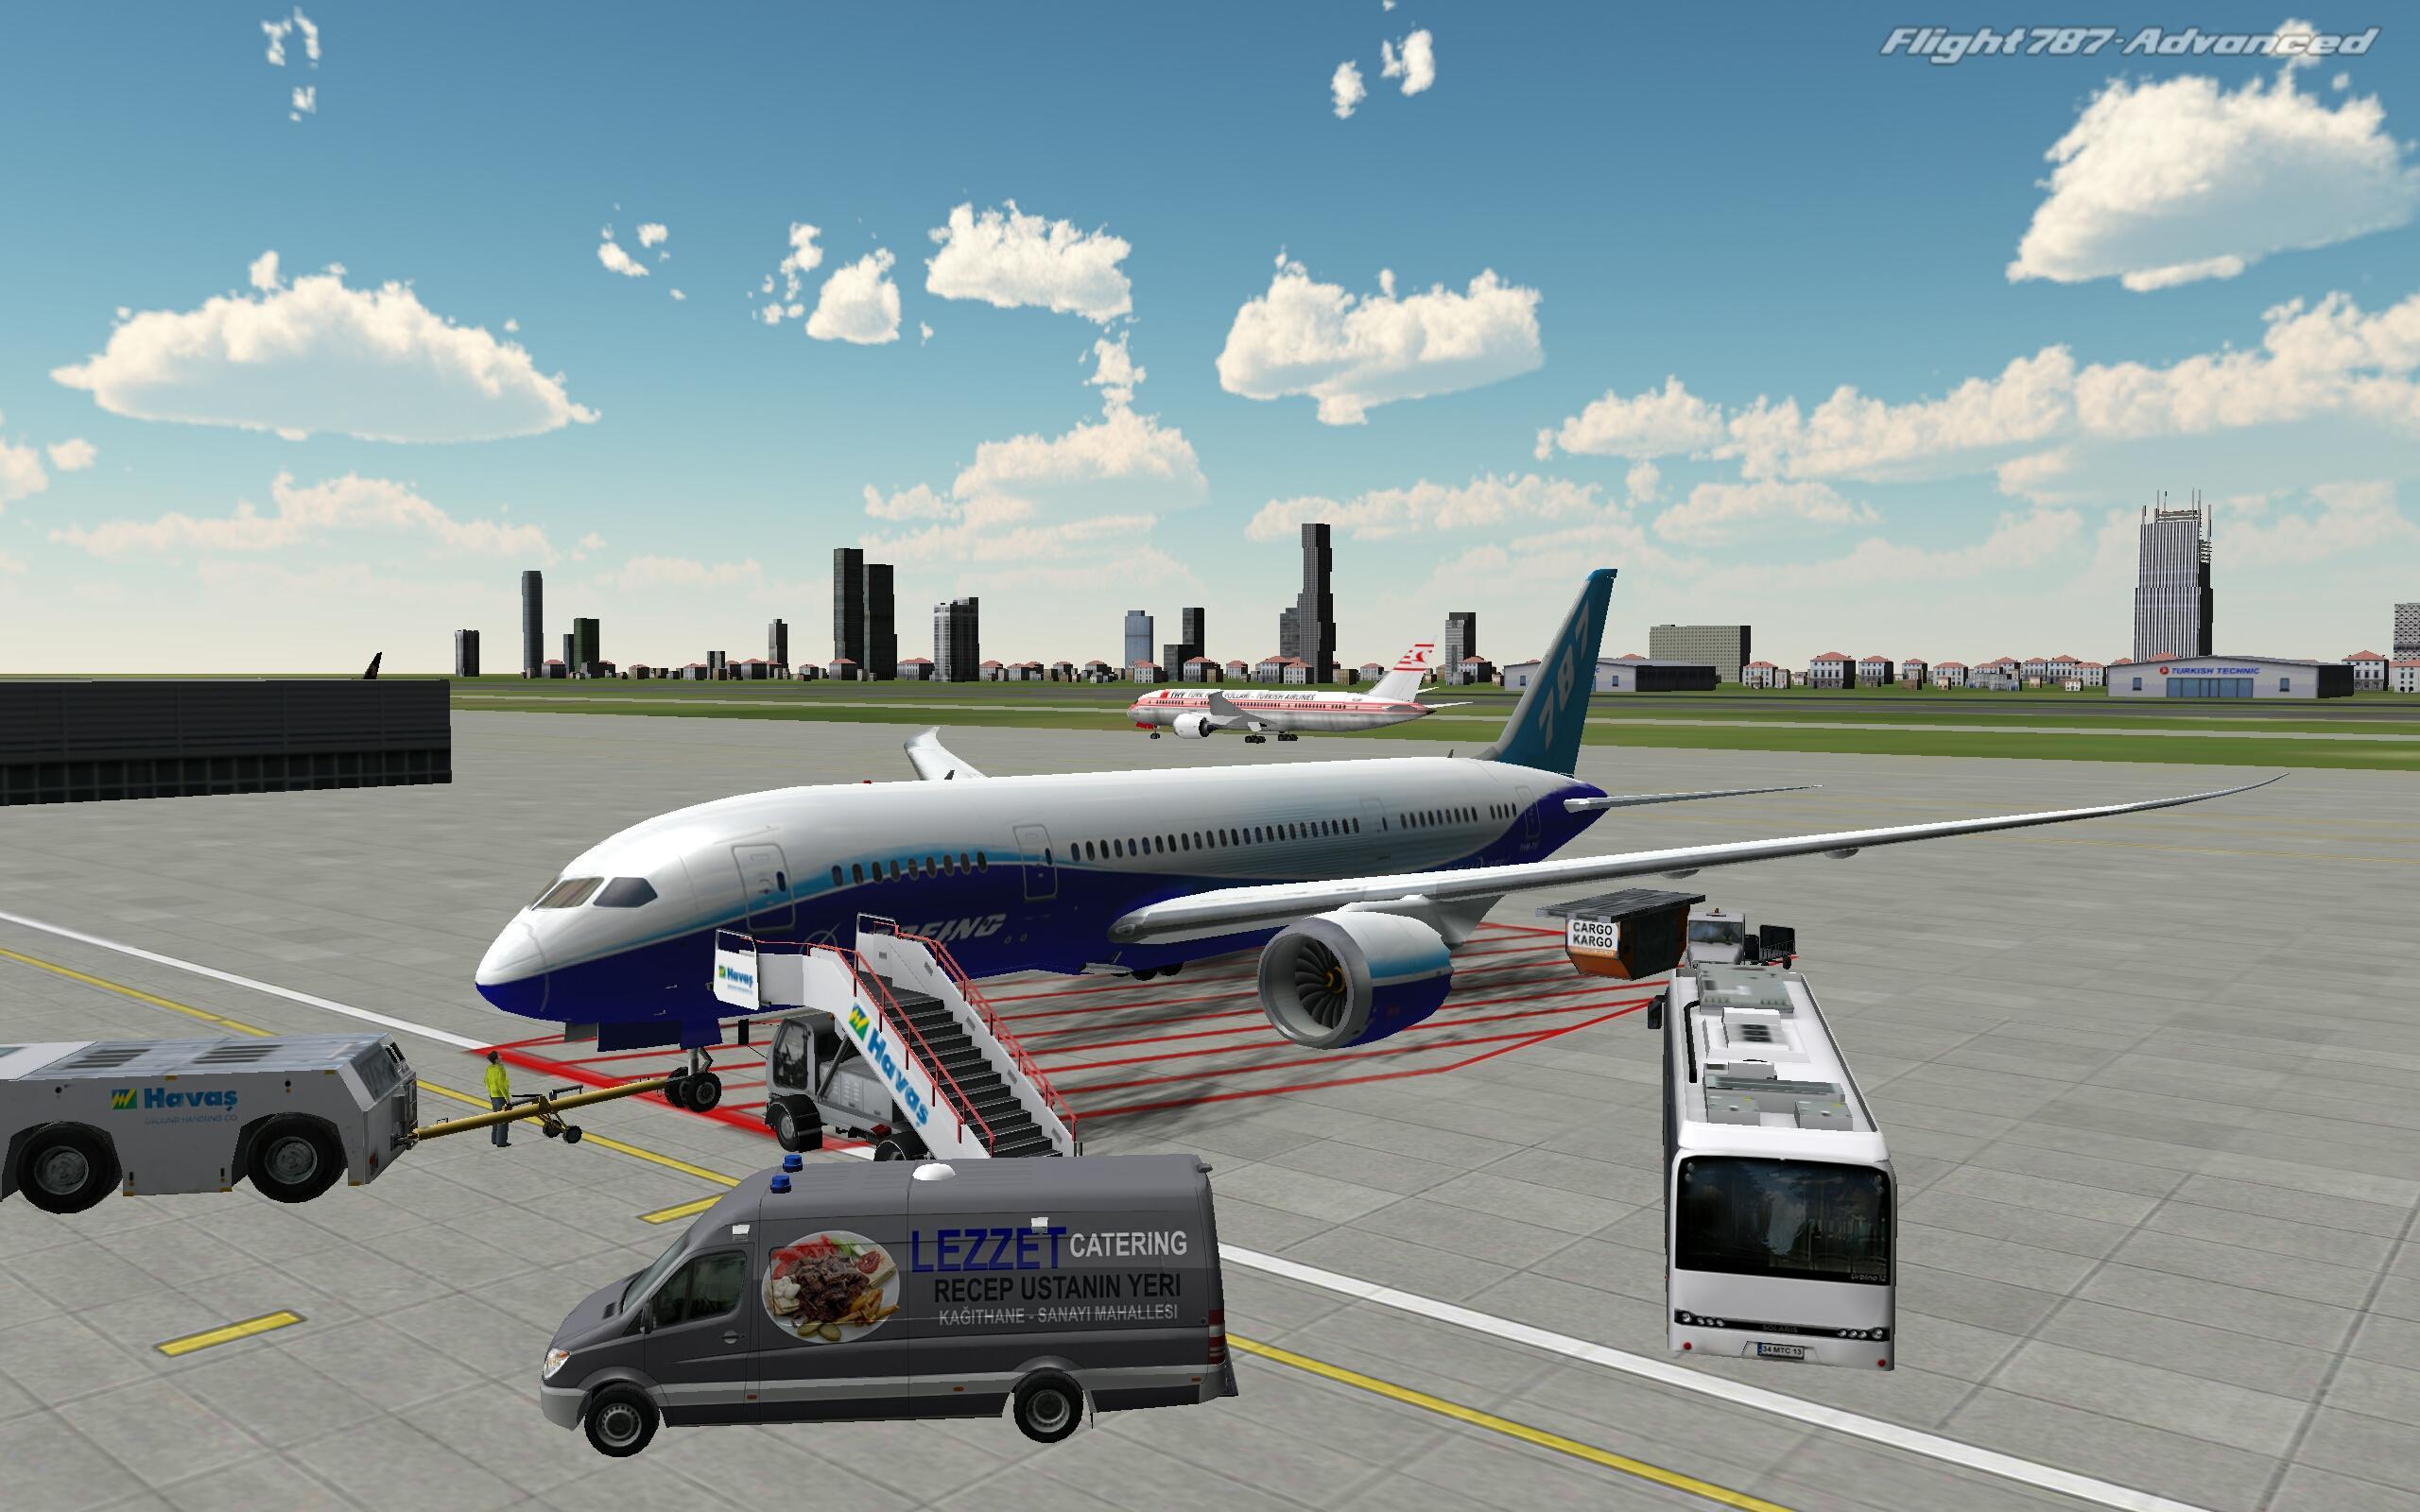 Много самолетов и игр. Flight 787 - Advanced. Реал Флайт симулятор. Авиасимулятор ВДНХ. Симулятор самолета пассажирского.